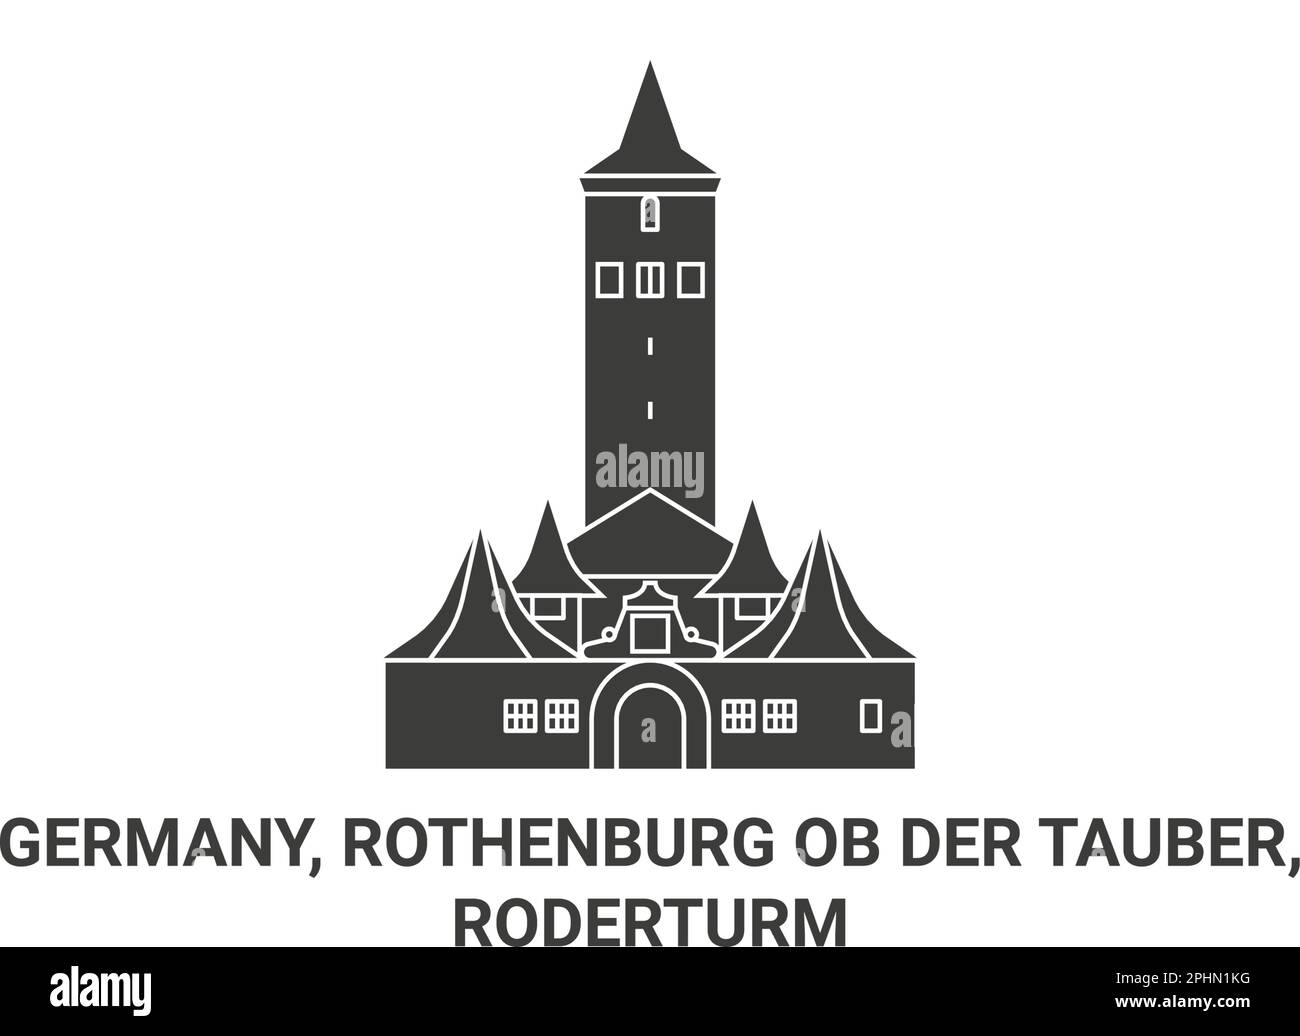 Deutschland, Rothenburg ob der Tauber, Roderturm Travel Landmark Vector Illustration Stock Vektor